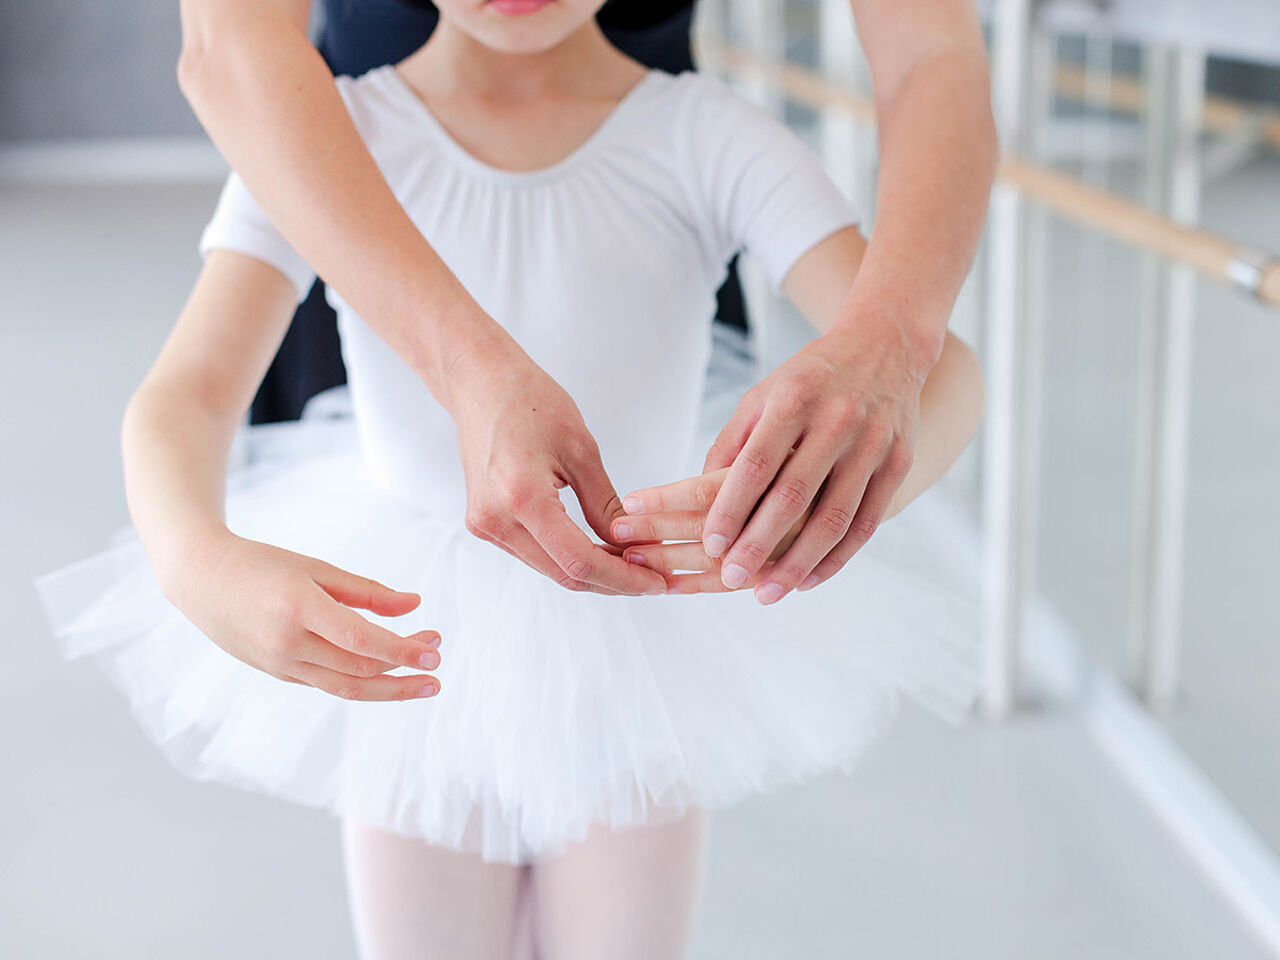 茨城の子ども向けバレエ教室選び方のポイント